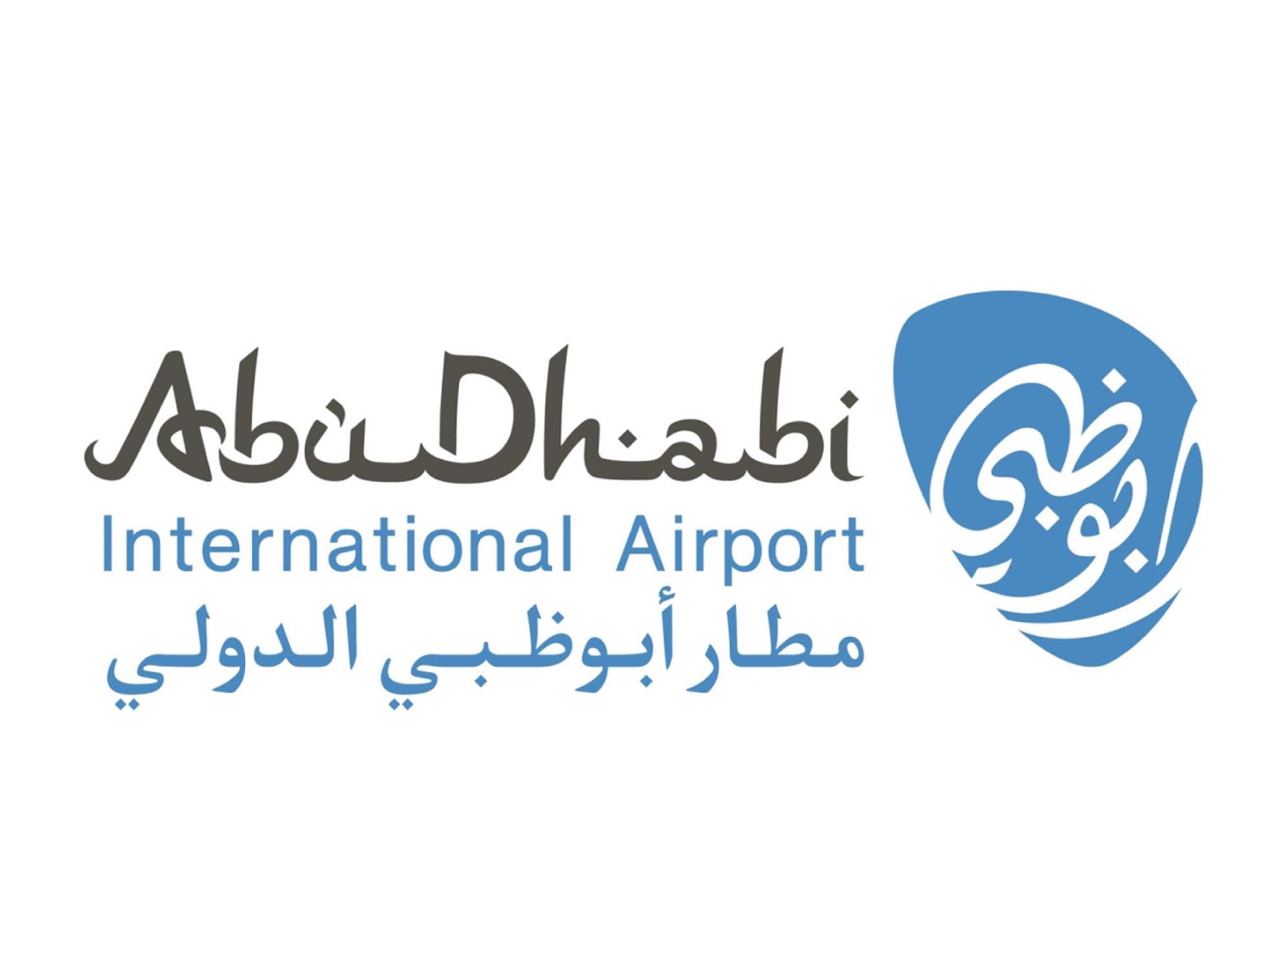 مطار أبوظبي الامارات العربية المتحدة     اعلان عن وظائف في مطار أبوظبي الامارات العربية المتحدة لعدة تخصصات في امارة ابوظبي للمواطنين والمقيمين